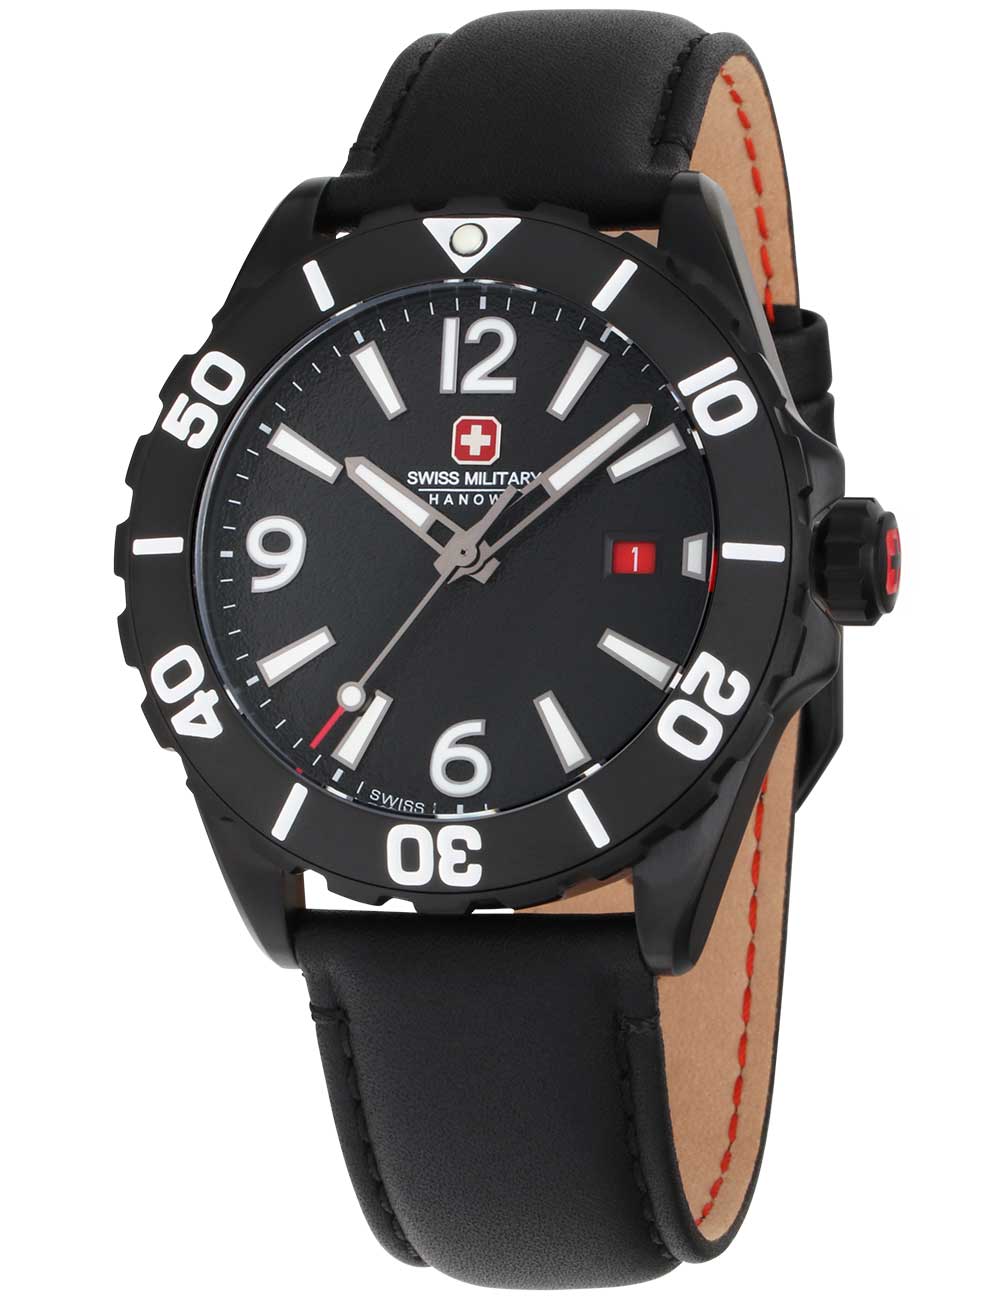 Pánské hodinky Swiss Military Hanowa SMWGB0000230 Carbon Peak